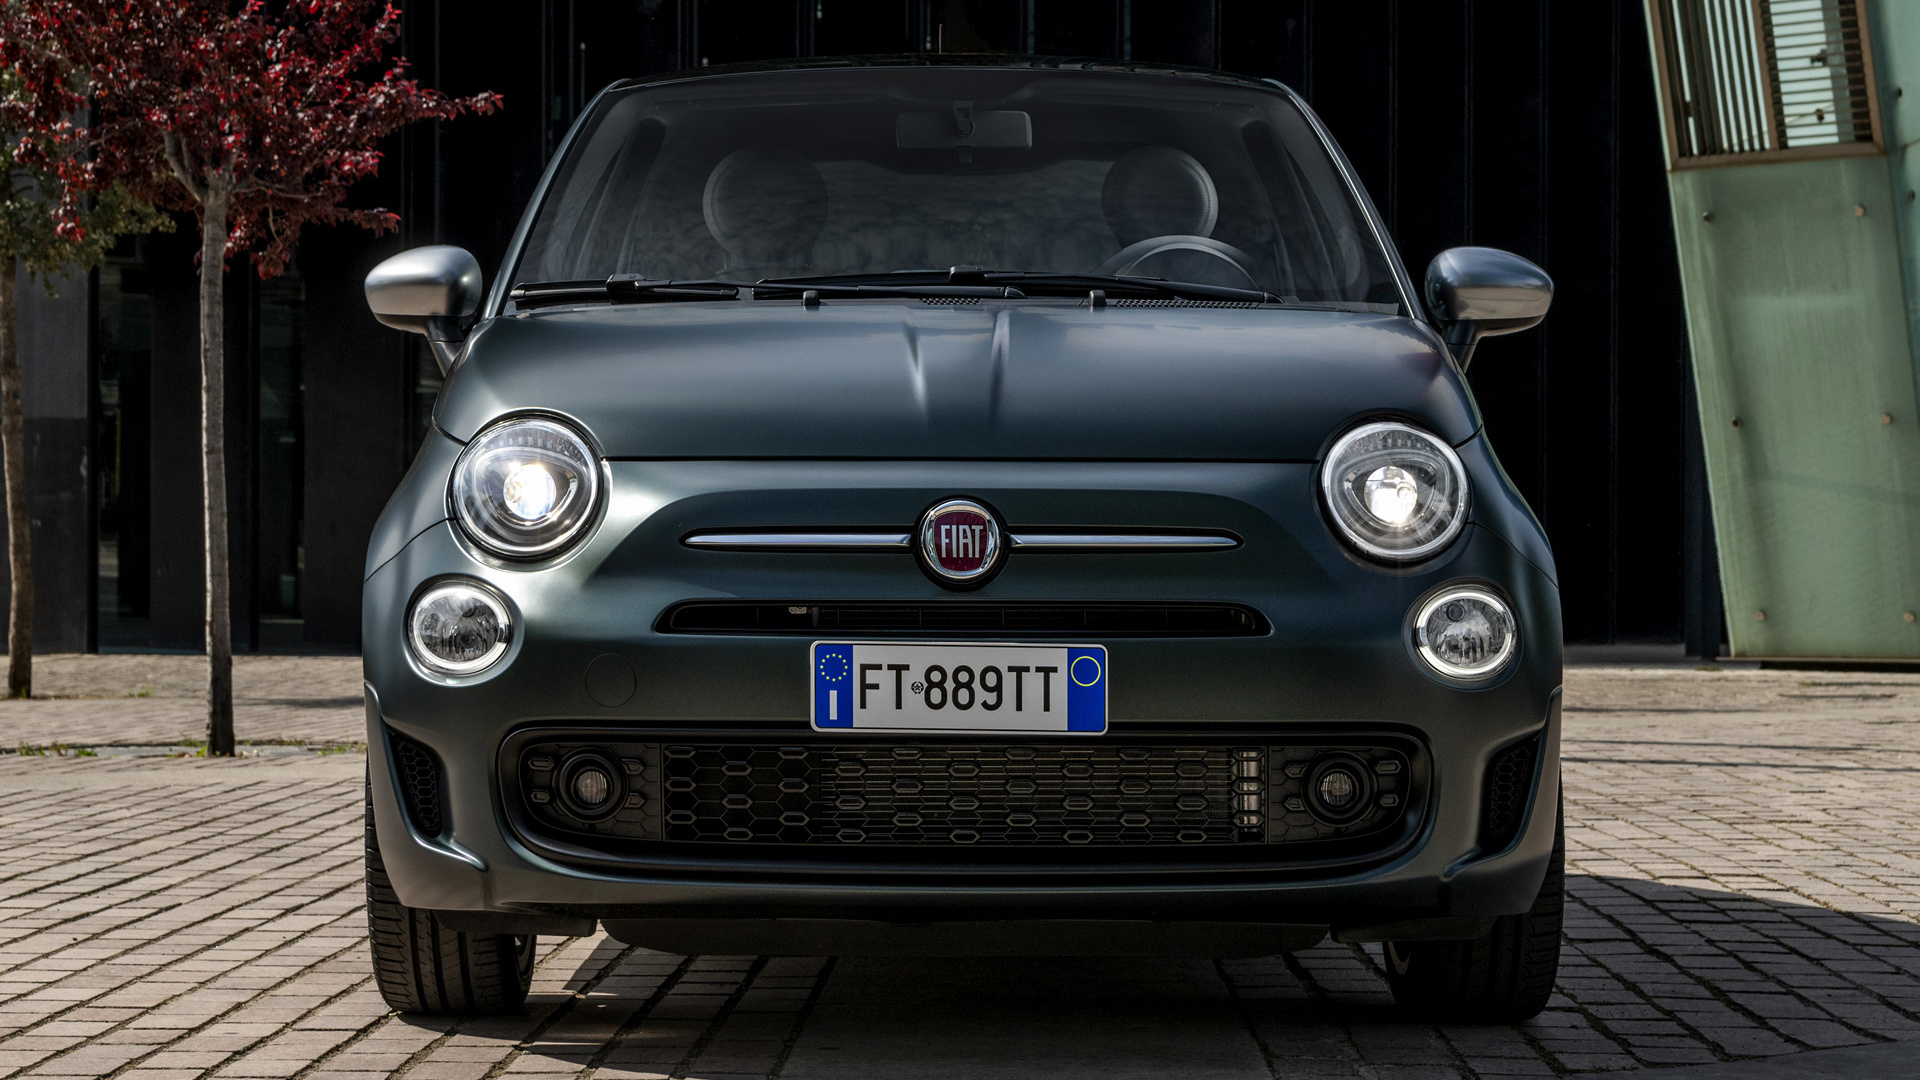 Fiat Rockstar Wallpaper And HD Image Car Pixel